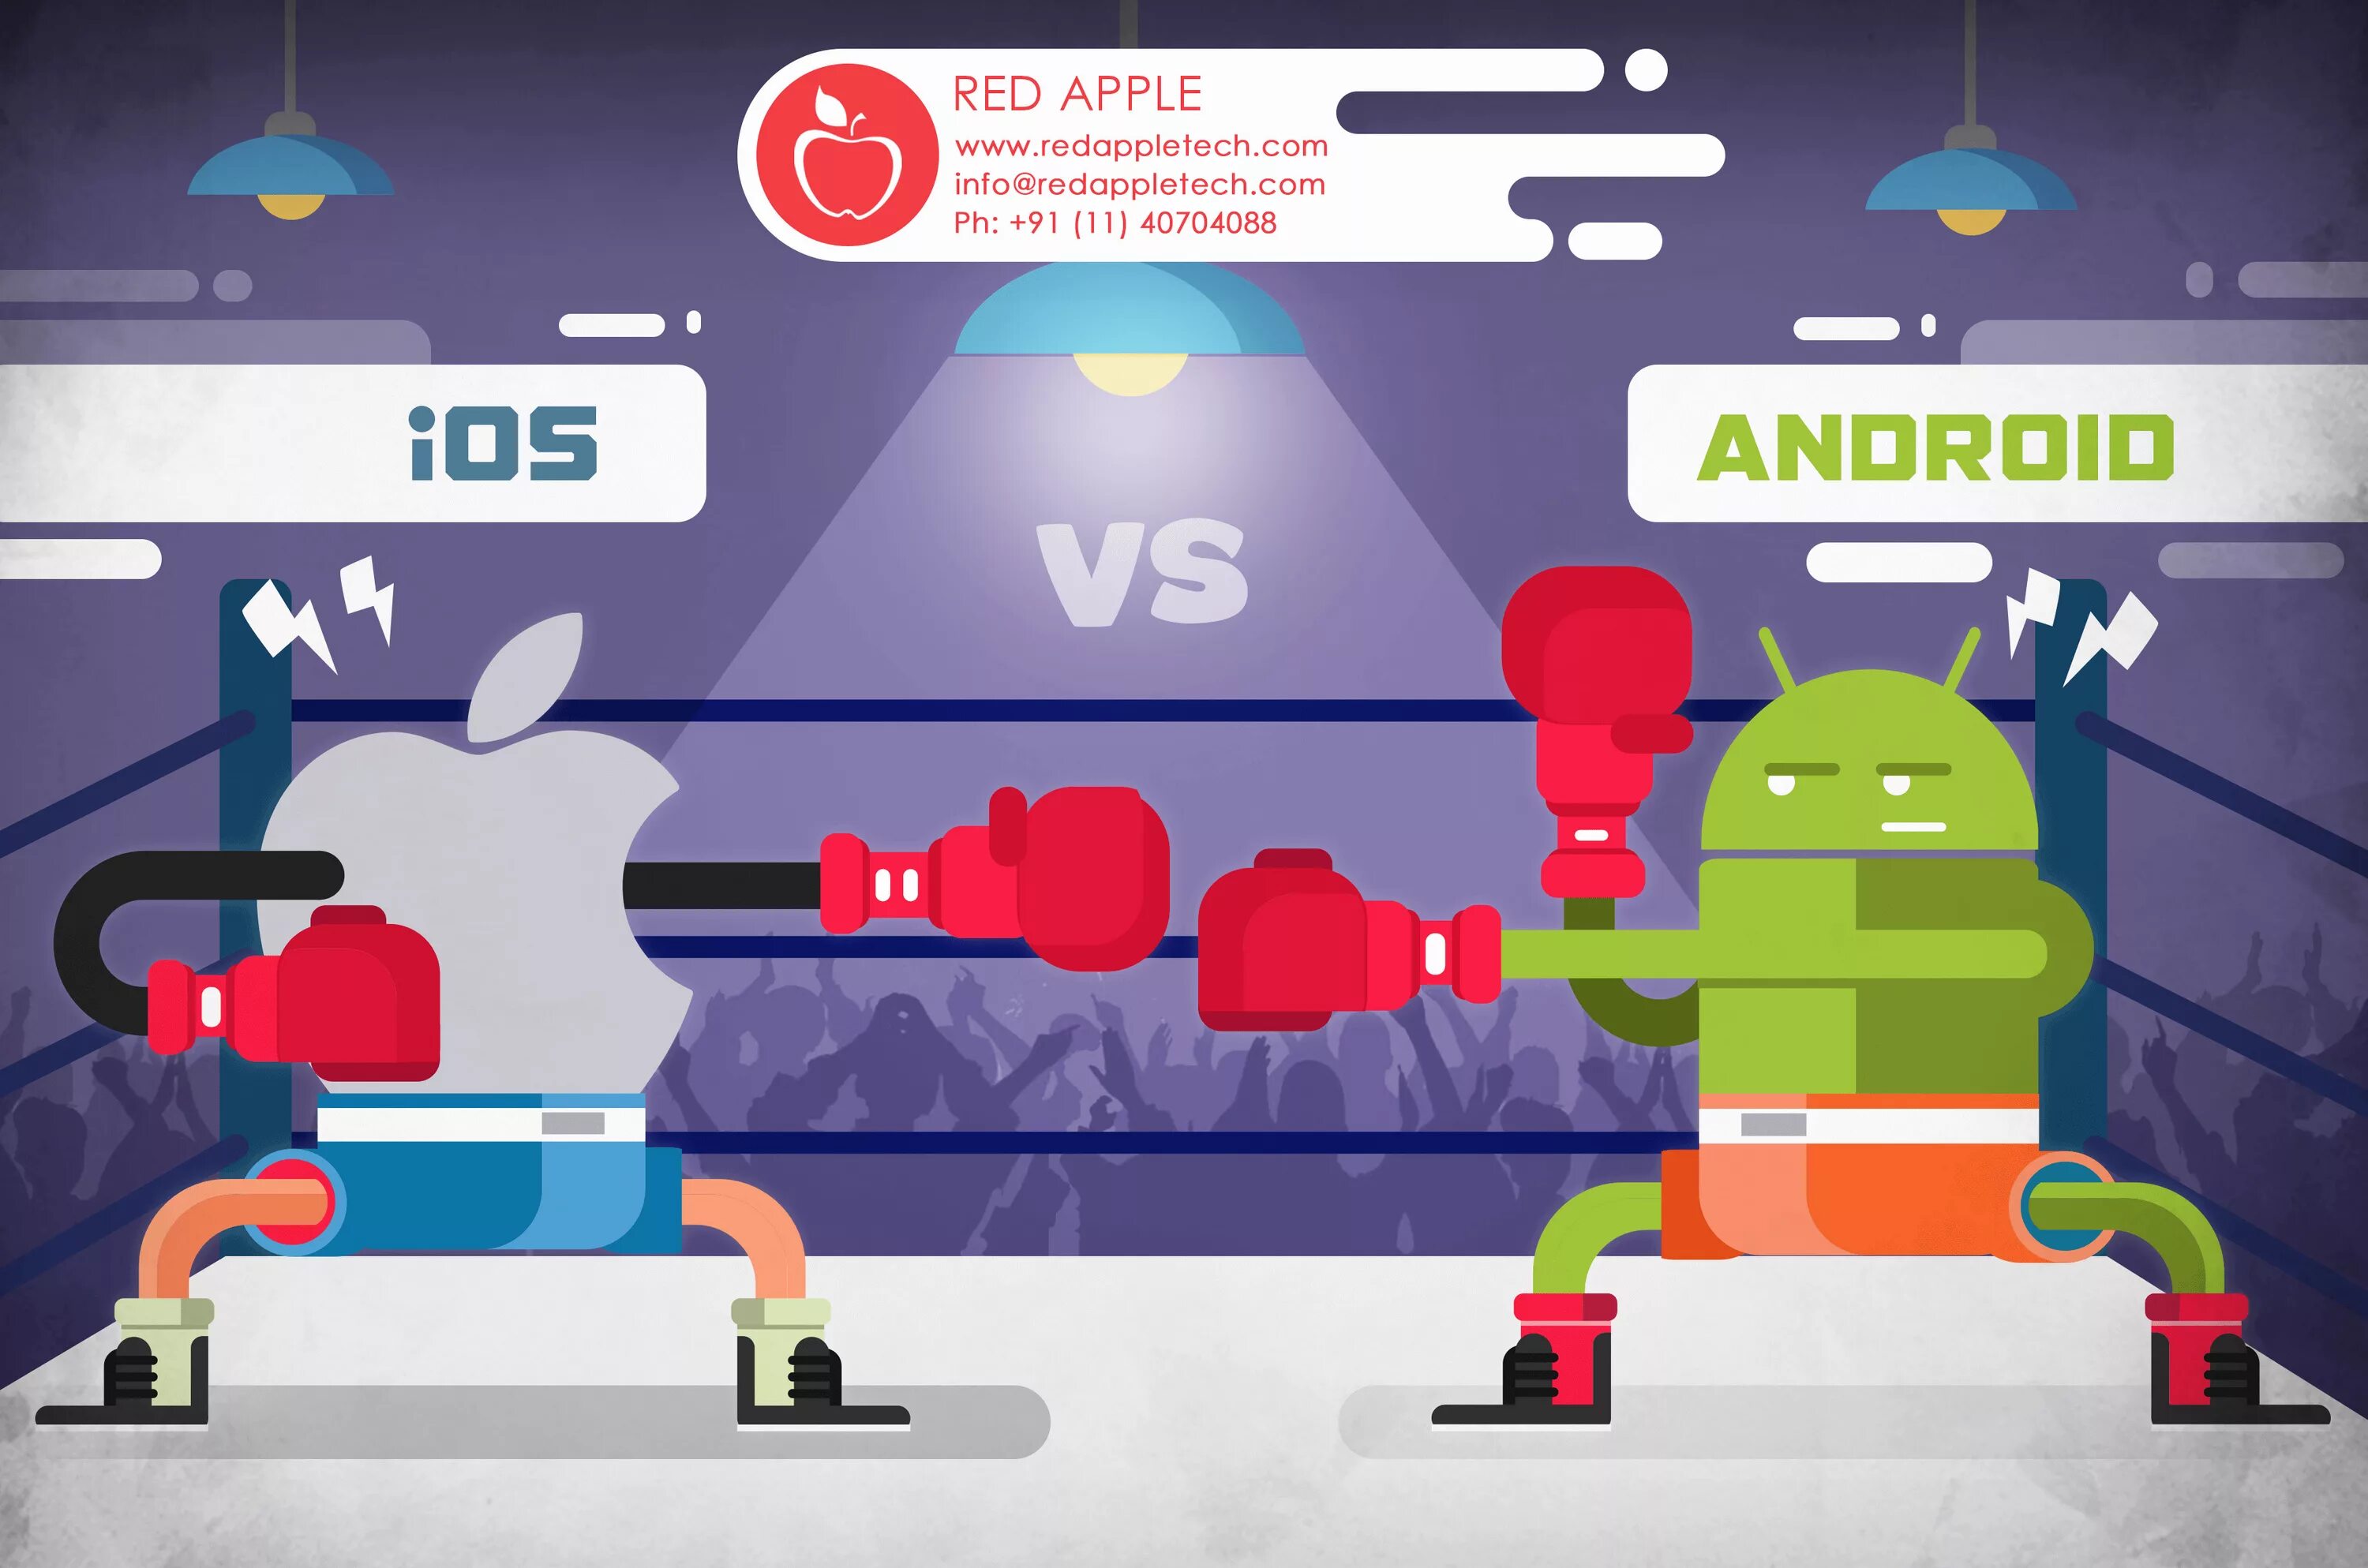 Android dick. Андроид против айос. Битва айос и андроид. Битва андроида и айфона. IOS против Android.